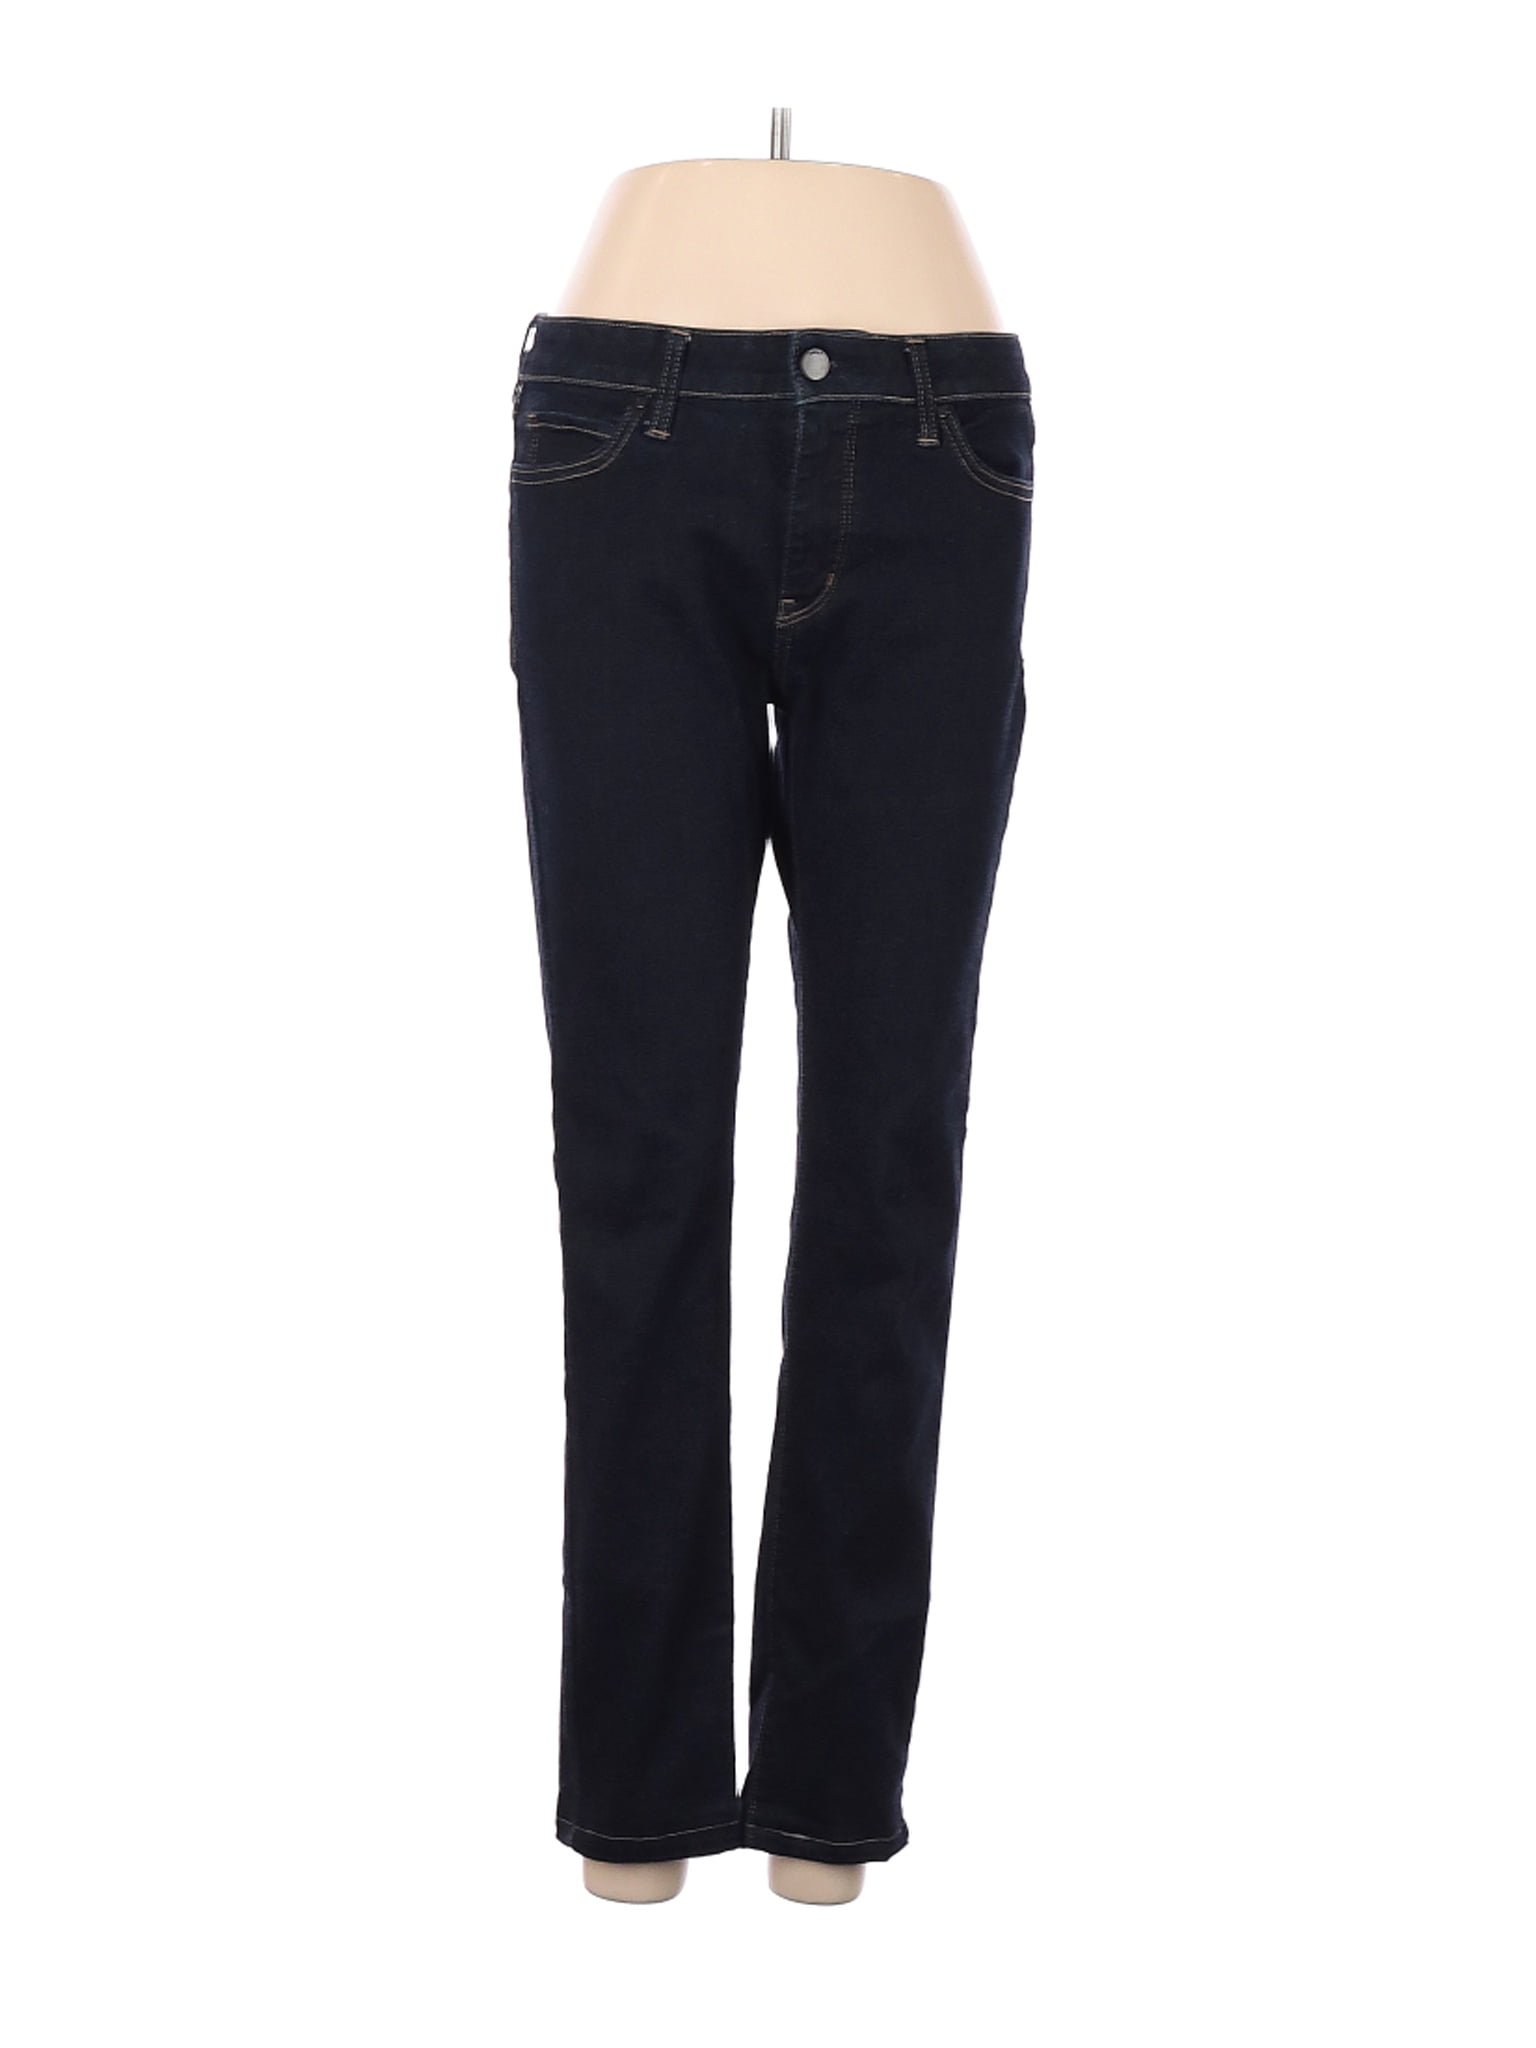 Uniqlo - Pre-Owned Uniqlo Women's Size 27W Jeans - Walmart.com ...